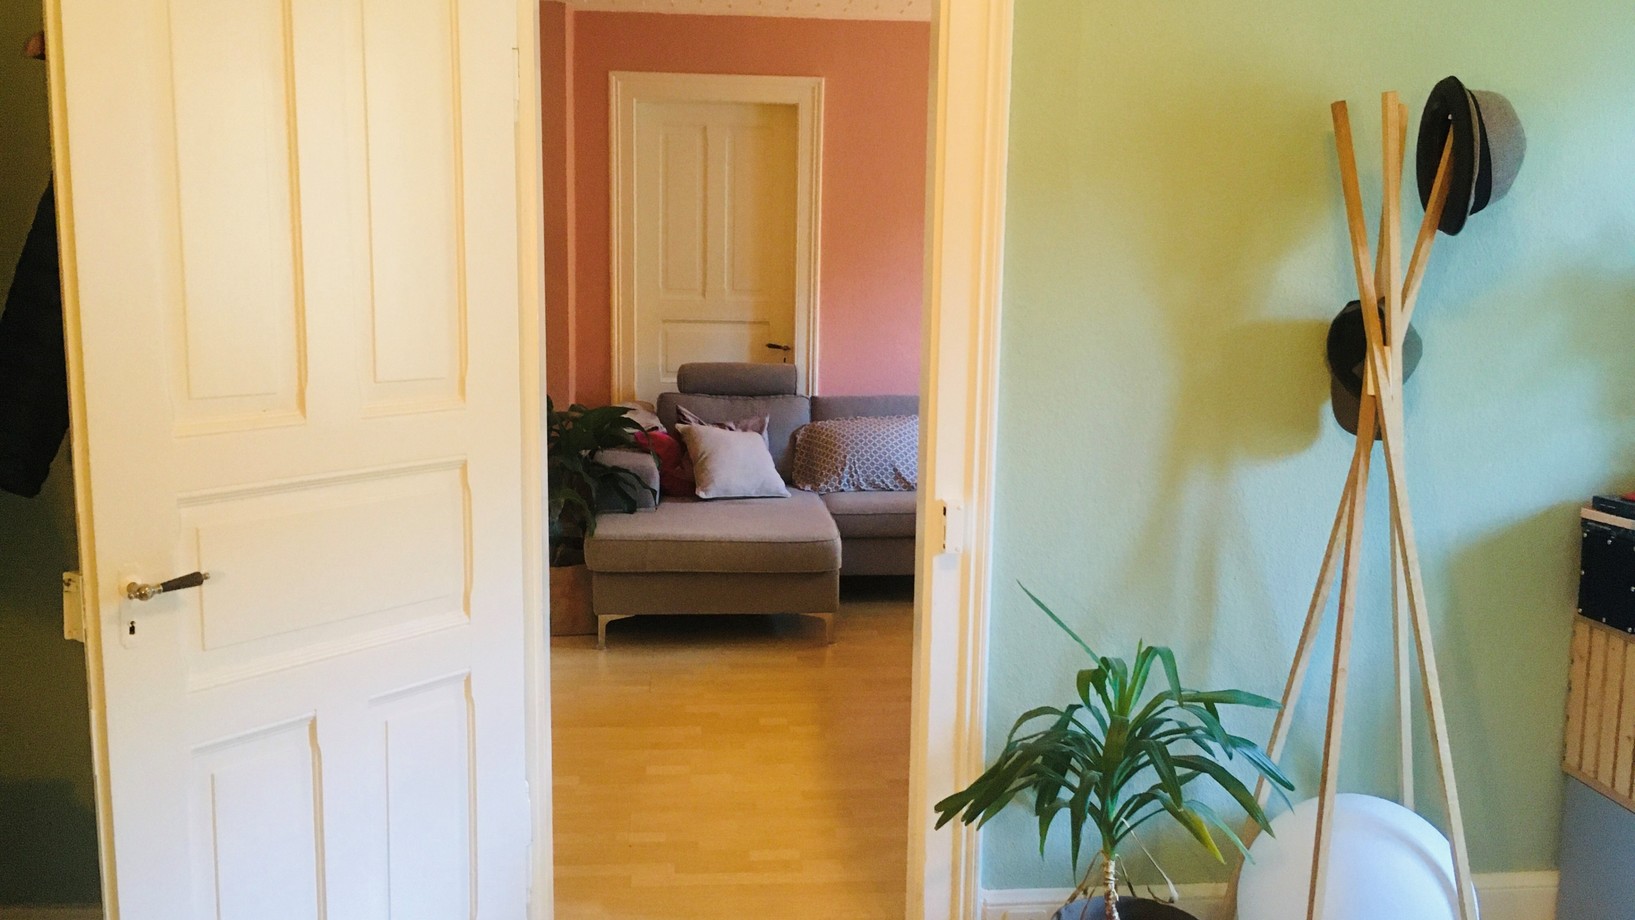 Durch eine weisse Türe sieht man von einem grün gestrichenen Zimmer auf ein altrosa gestrichenes Zimmer